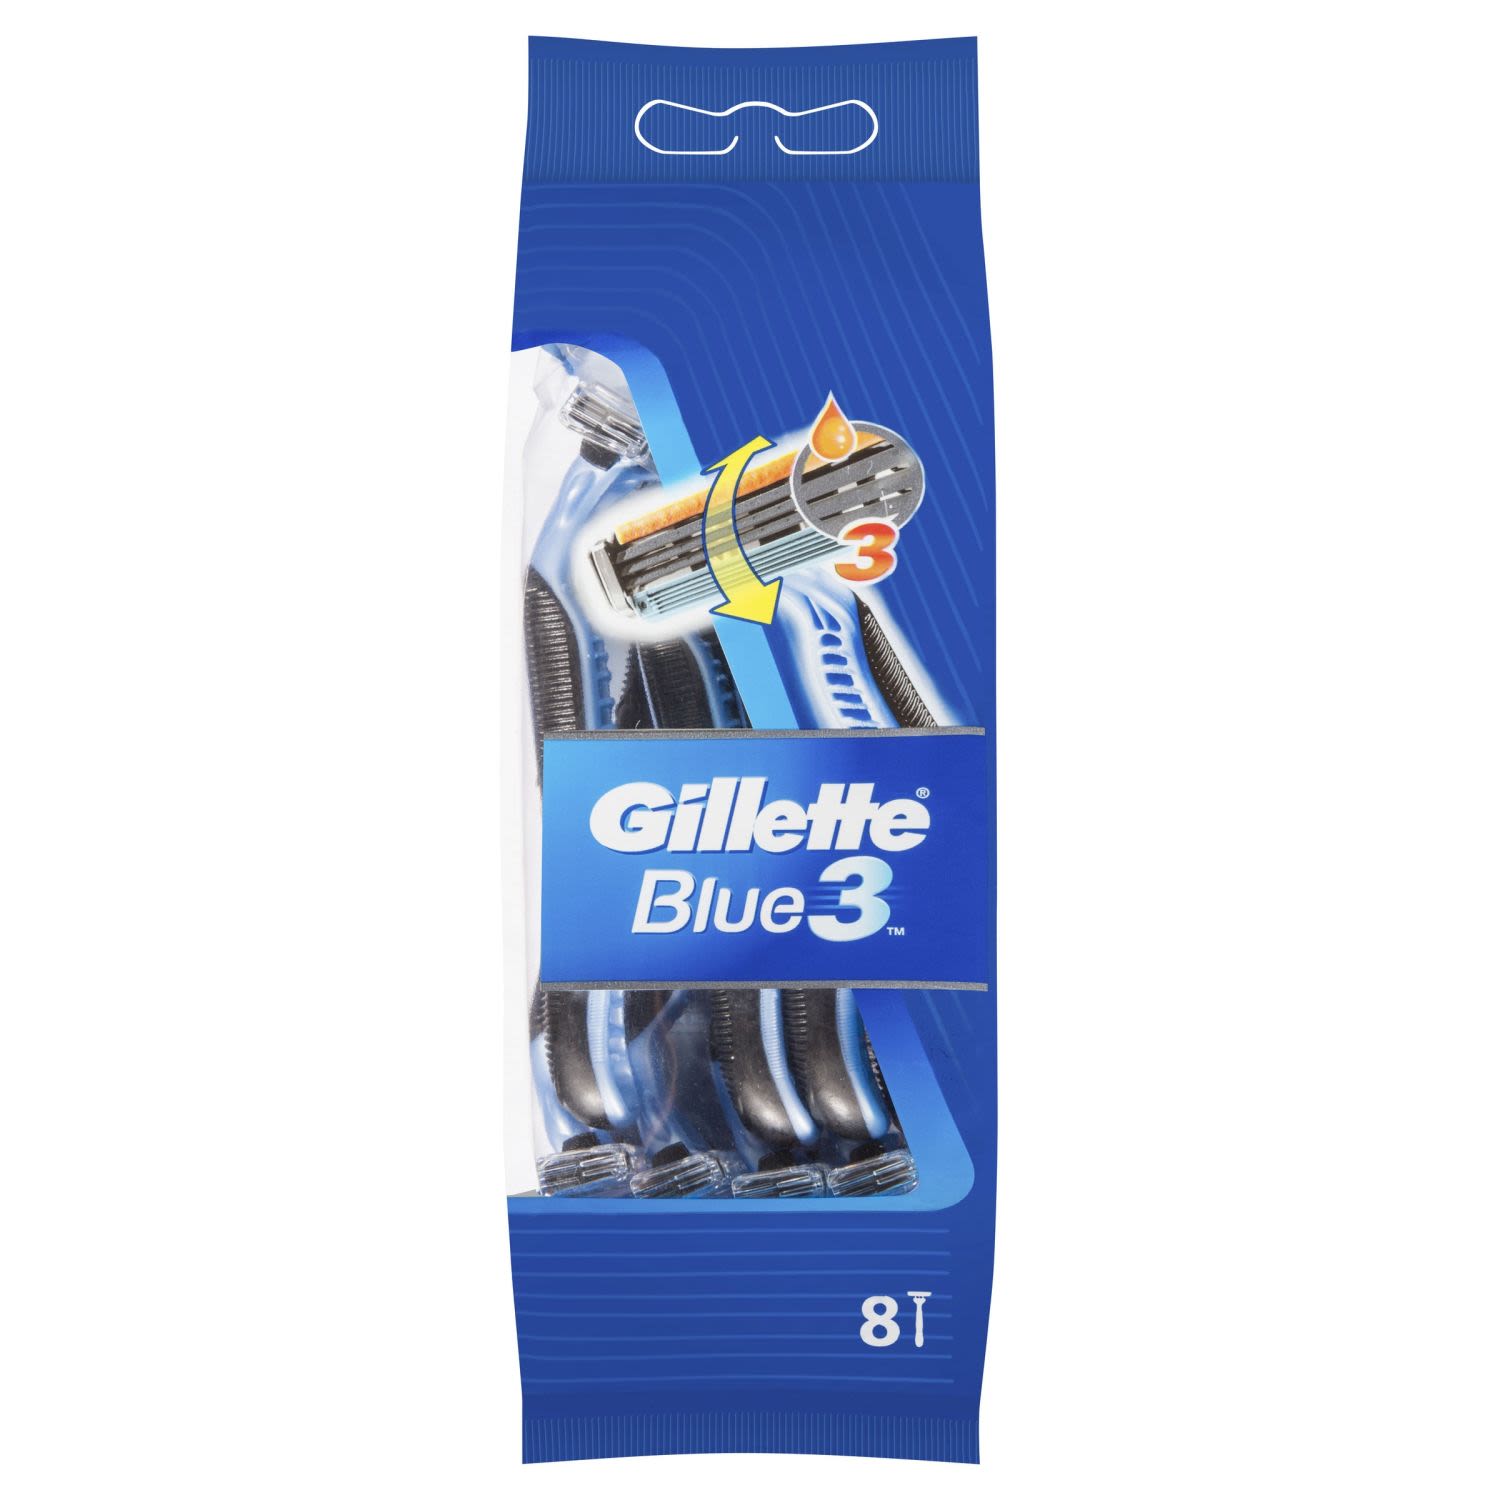 Gillette Blue 3 Disposable Shaving Razor, 8 Each